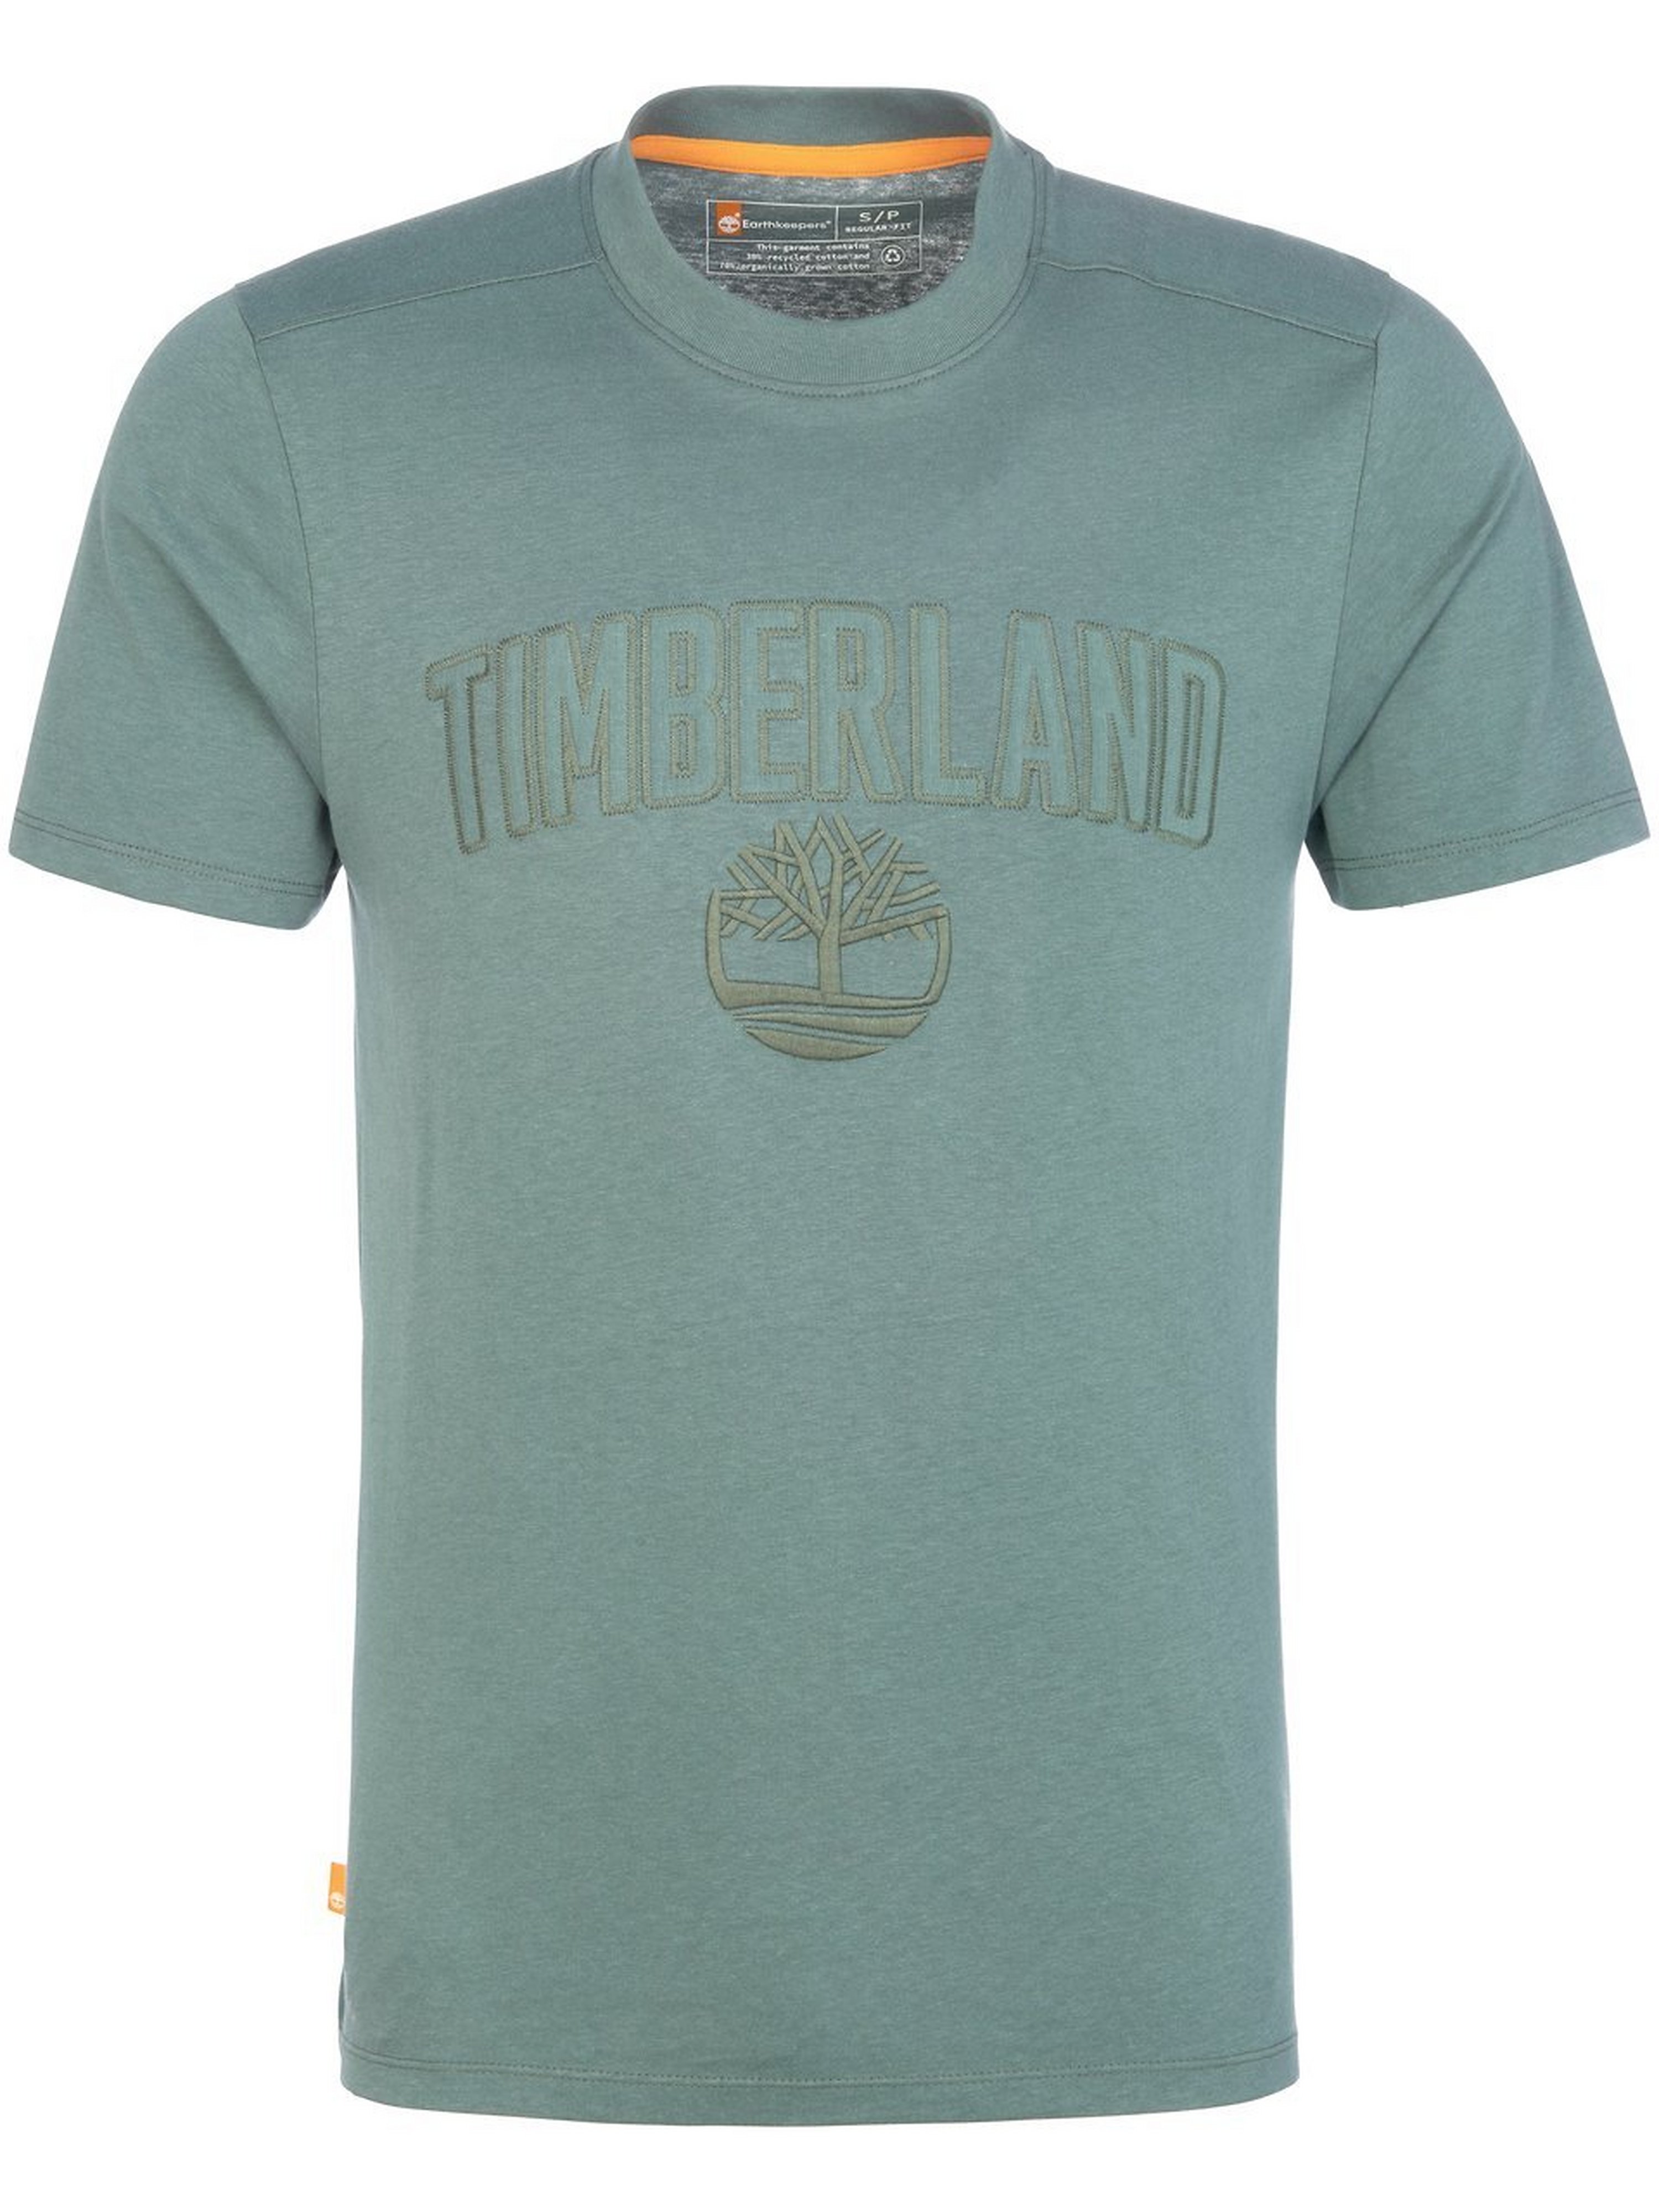 T-Shirt Timberland grün Größe: 50